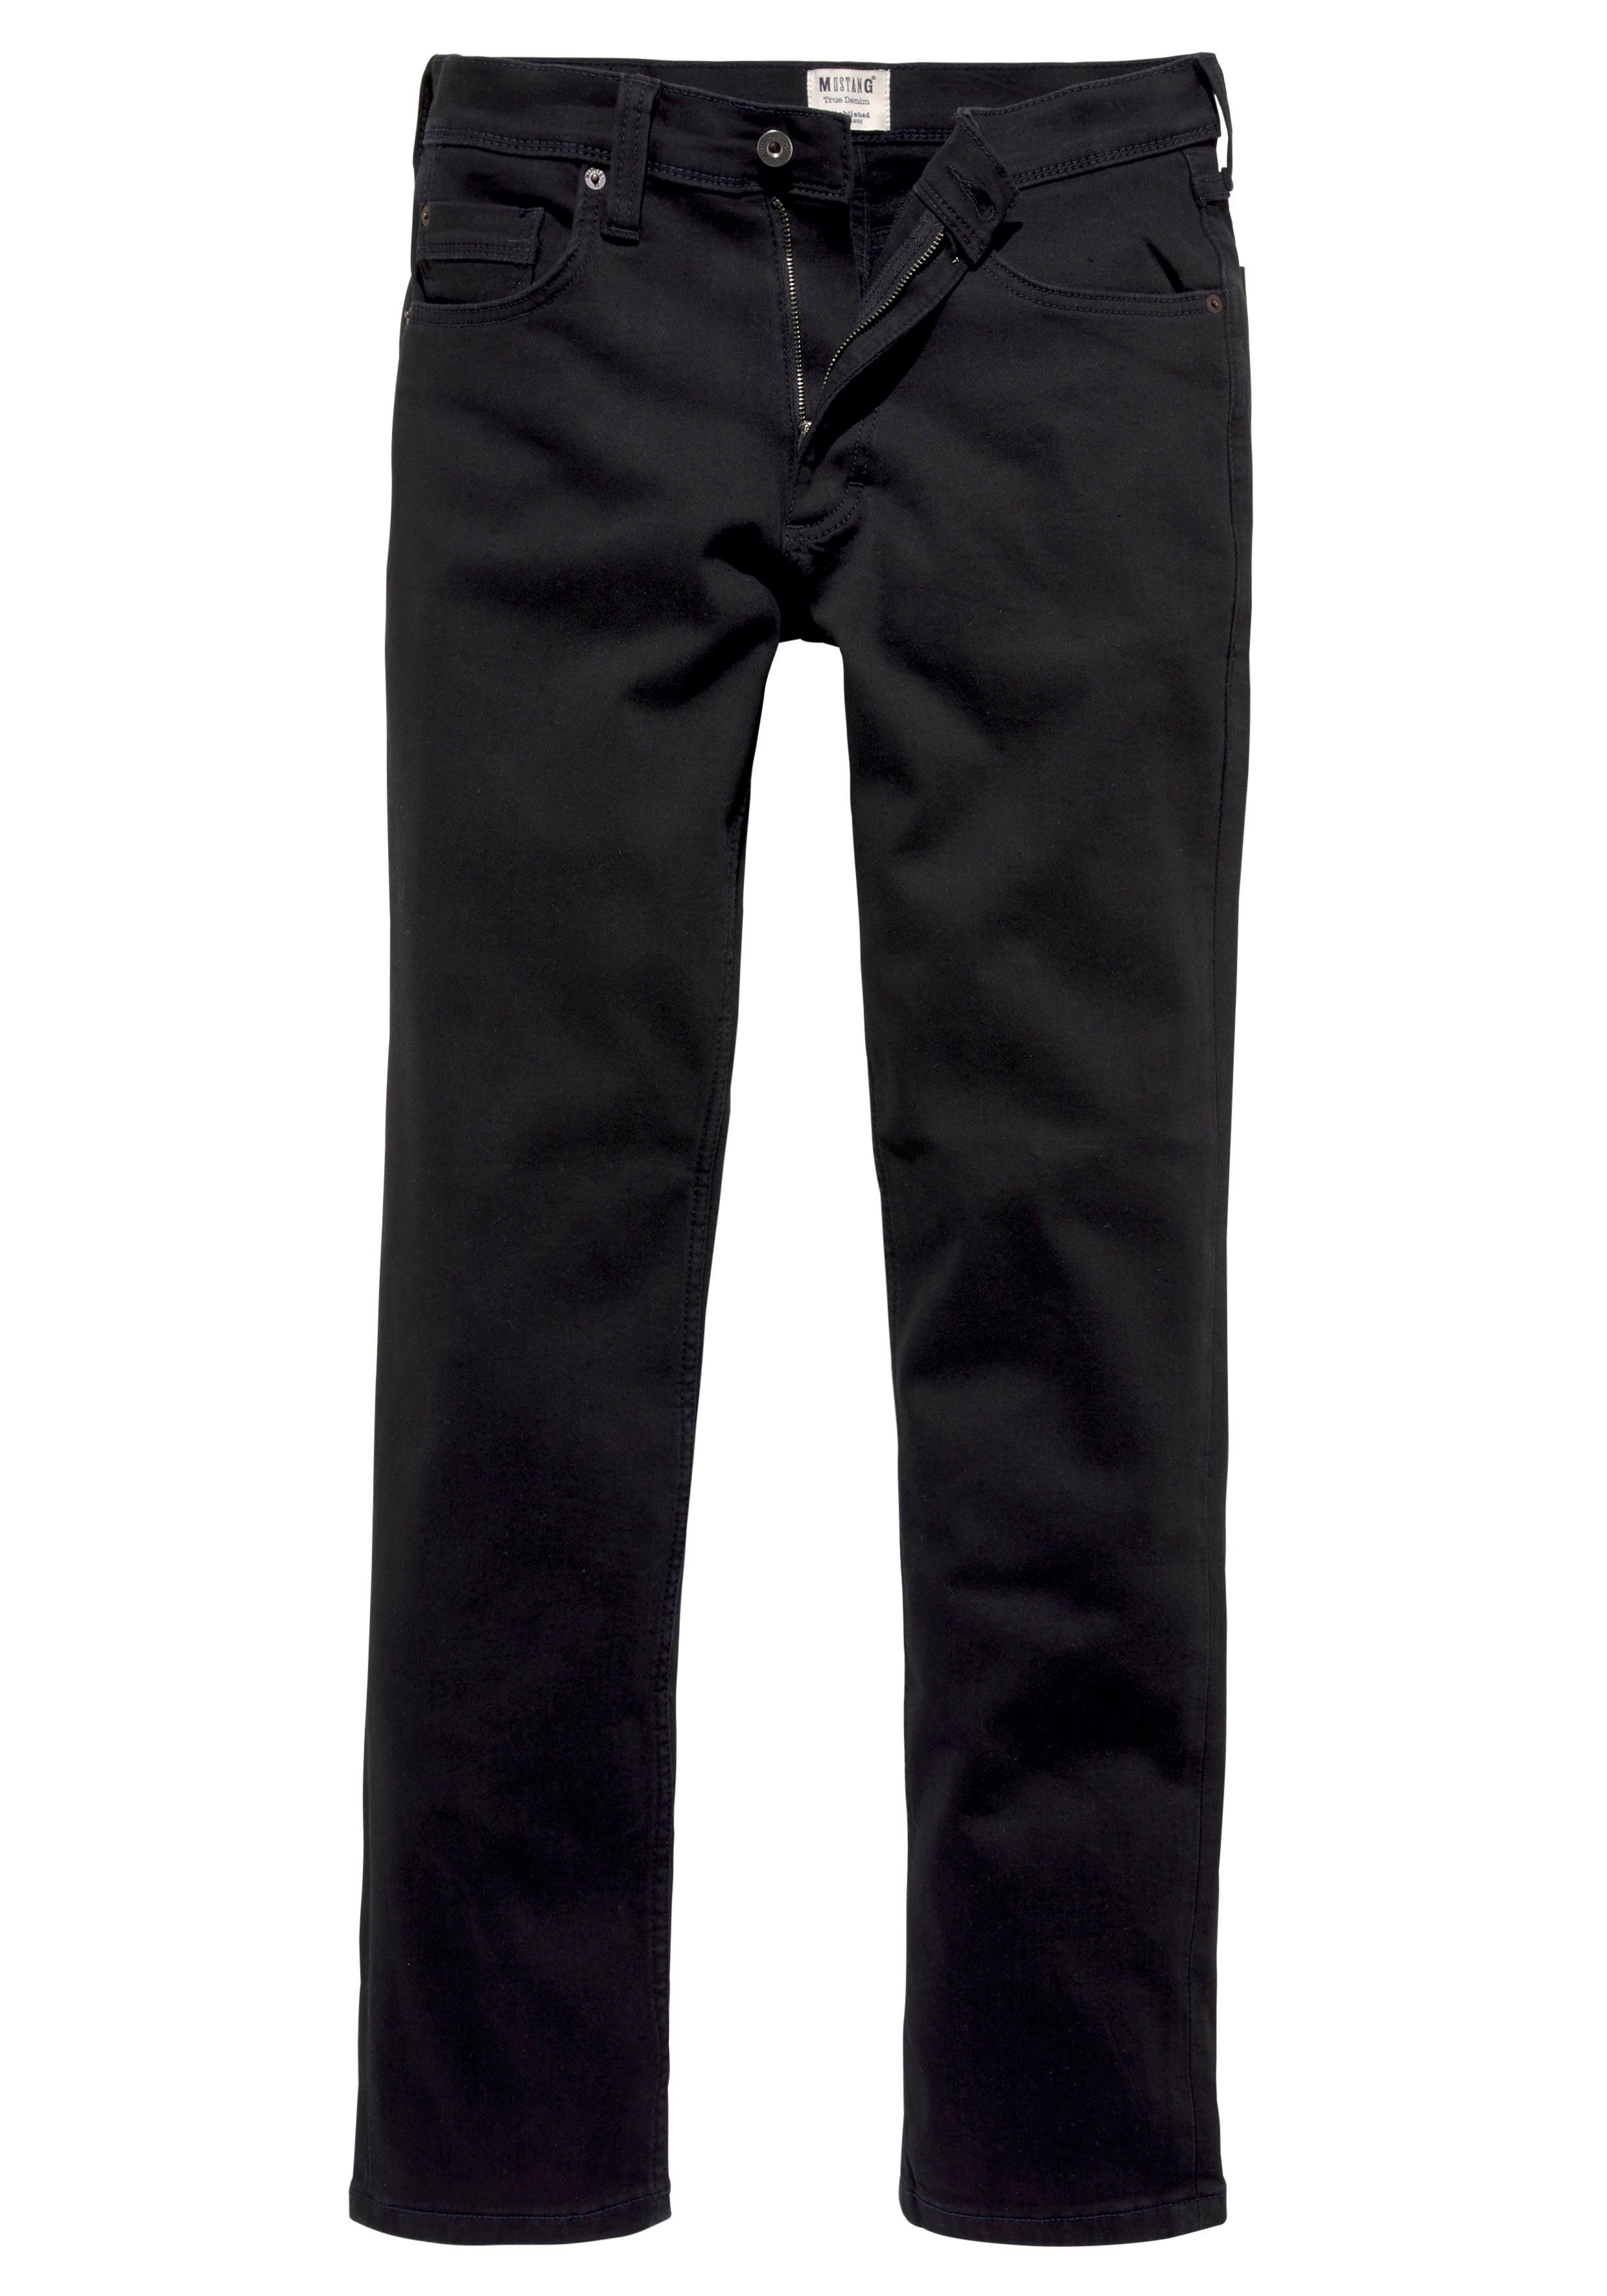 MUSTANG Straight Washington Style mit 5-Pocket-Jeans Abriebeffekten black-denim leichten